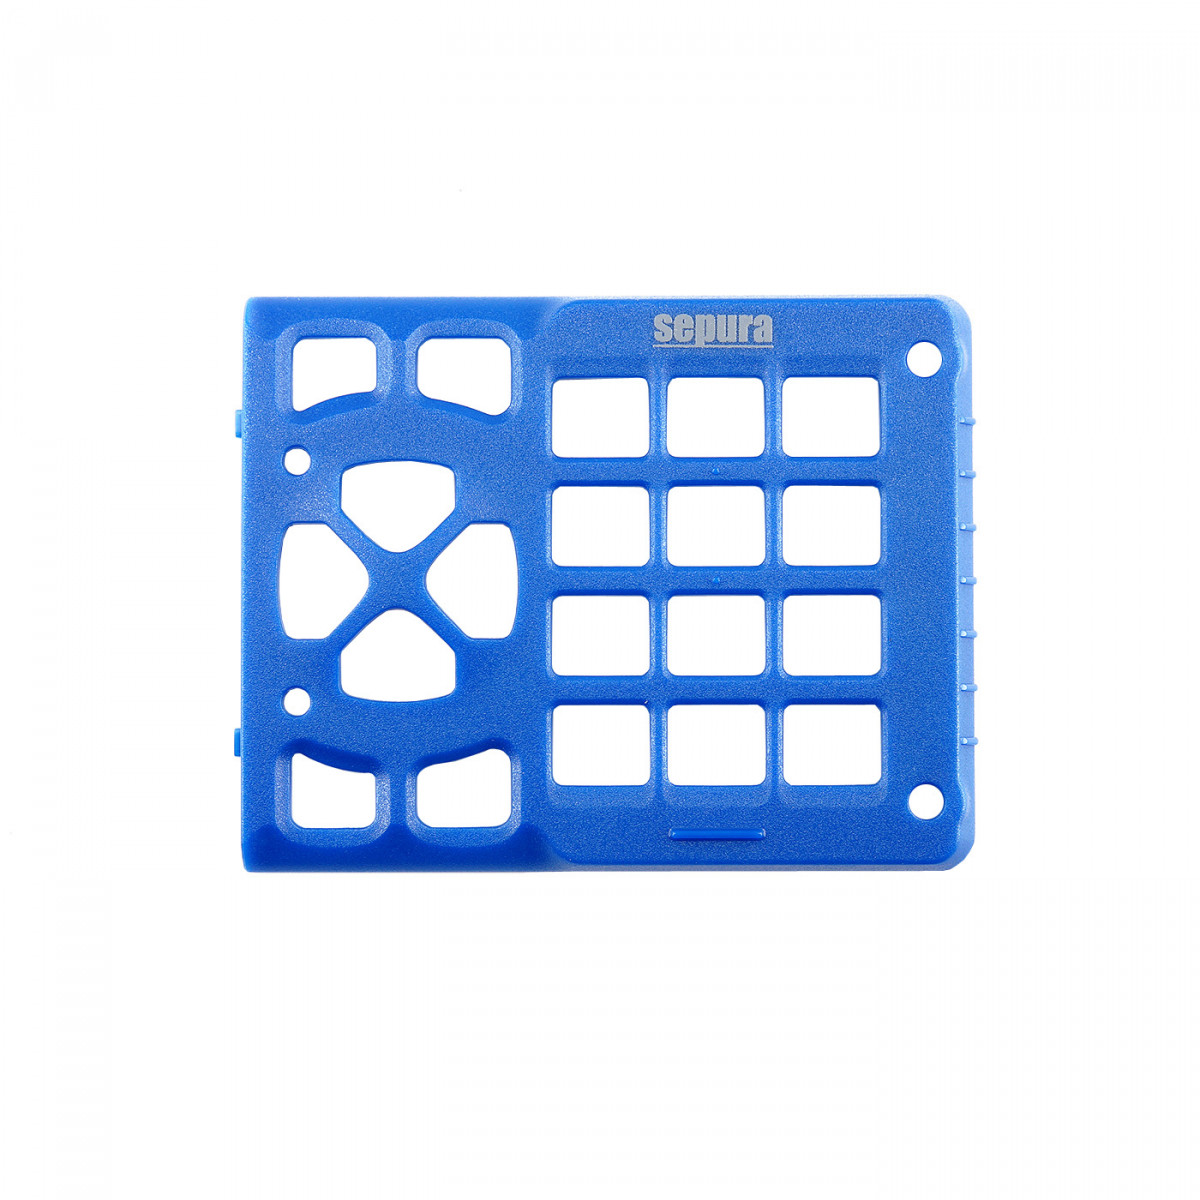 SEPURA Tastaturrahmen, blau für Farb-Bedienteil des SRG3x00 SCC1 und SCC2 700-00490